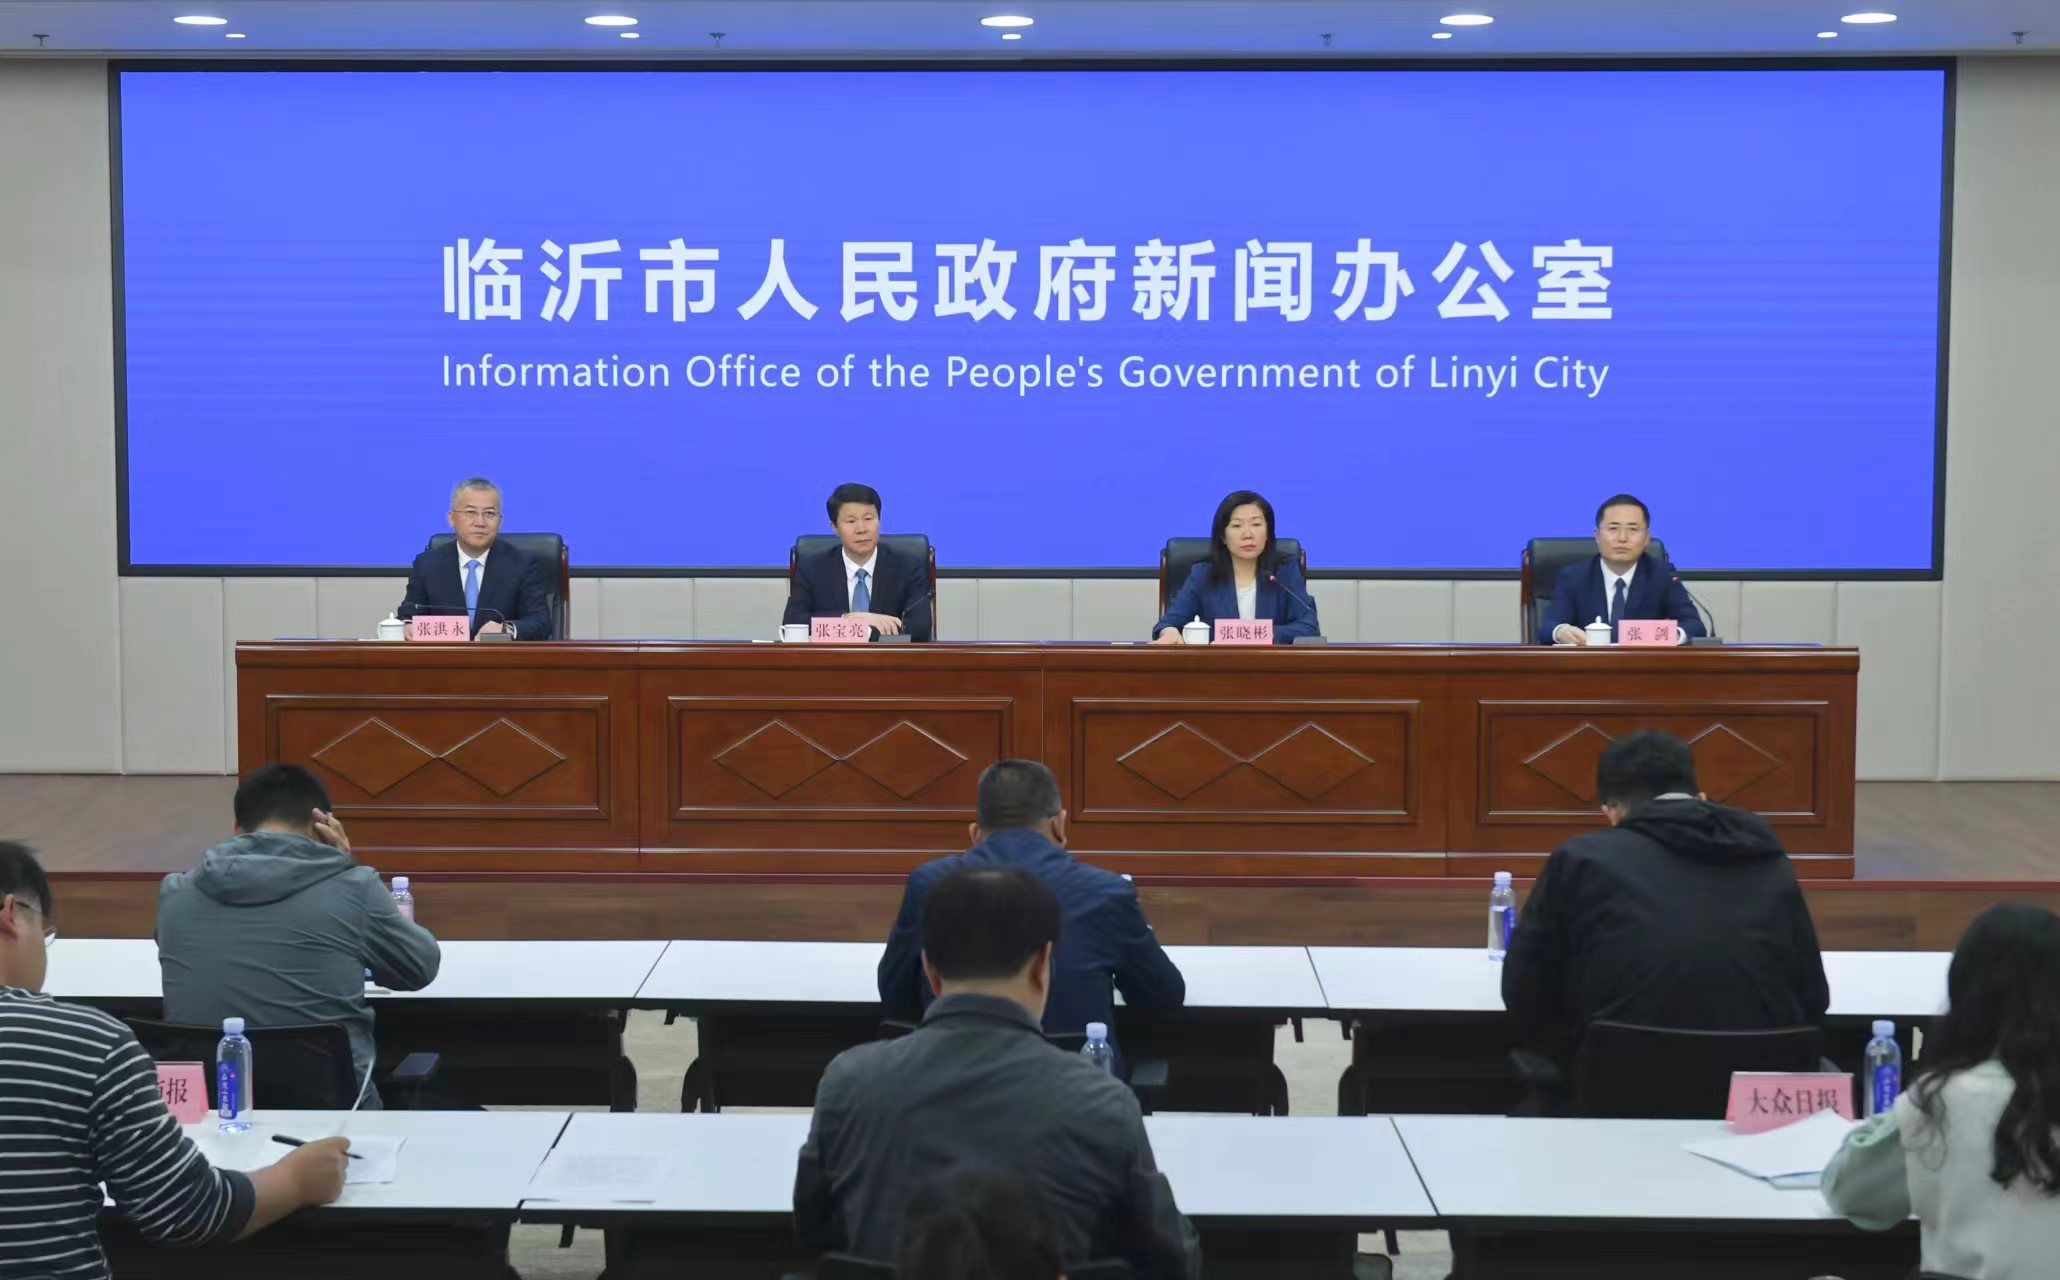 第十二屆東亞地方政府會議將于山東臨沂舉辦